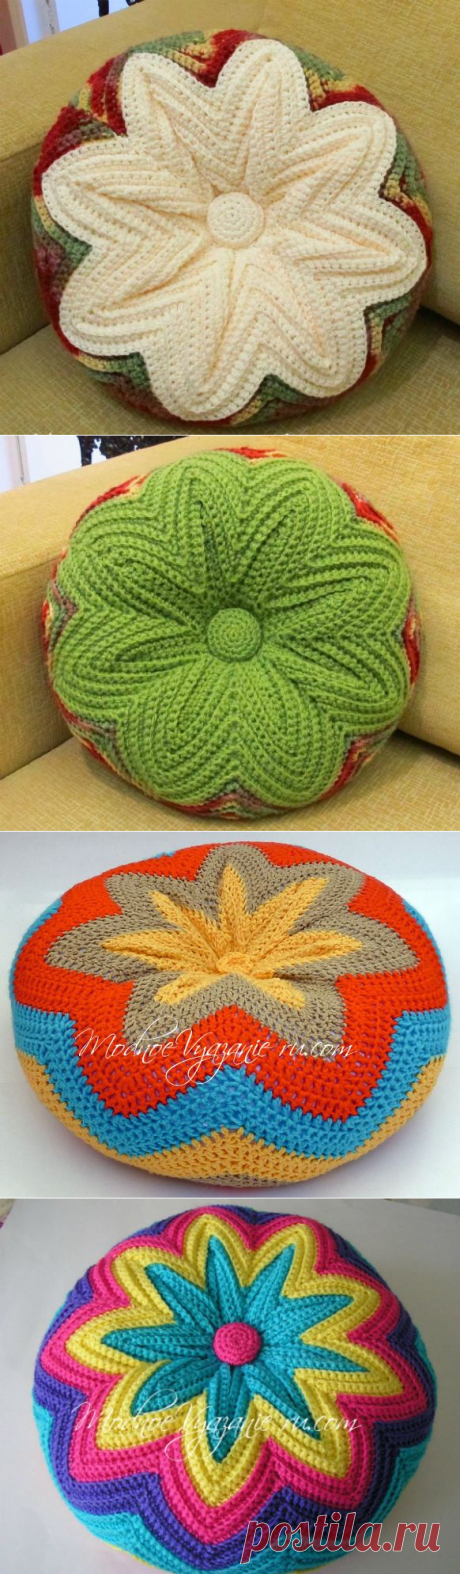 Декоративная подушка крючком узором зигзаг - Crochet - Modnoe Vyazanie